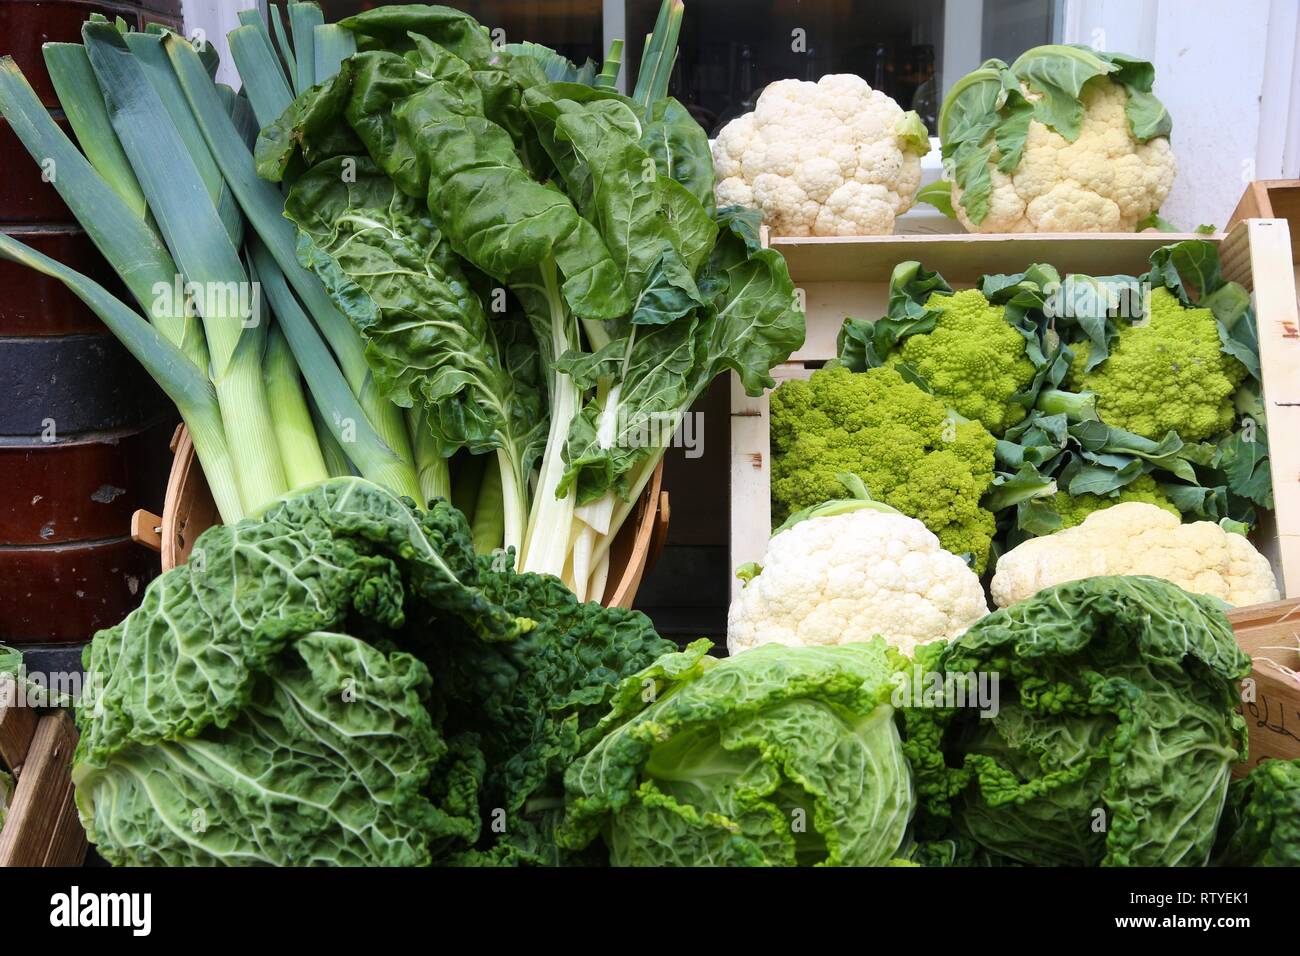 Organische Collard Greens, Blumenkohl, Porree und Brokkoli - Gemüse Laden in London, UK. Stockfoto